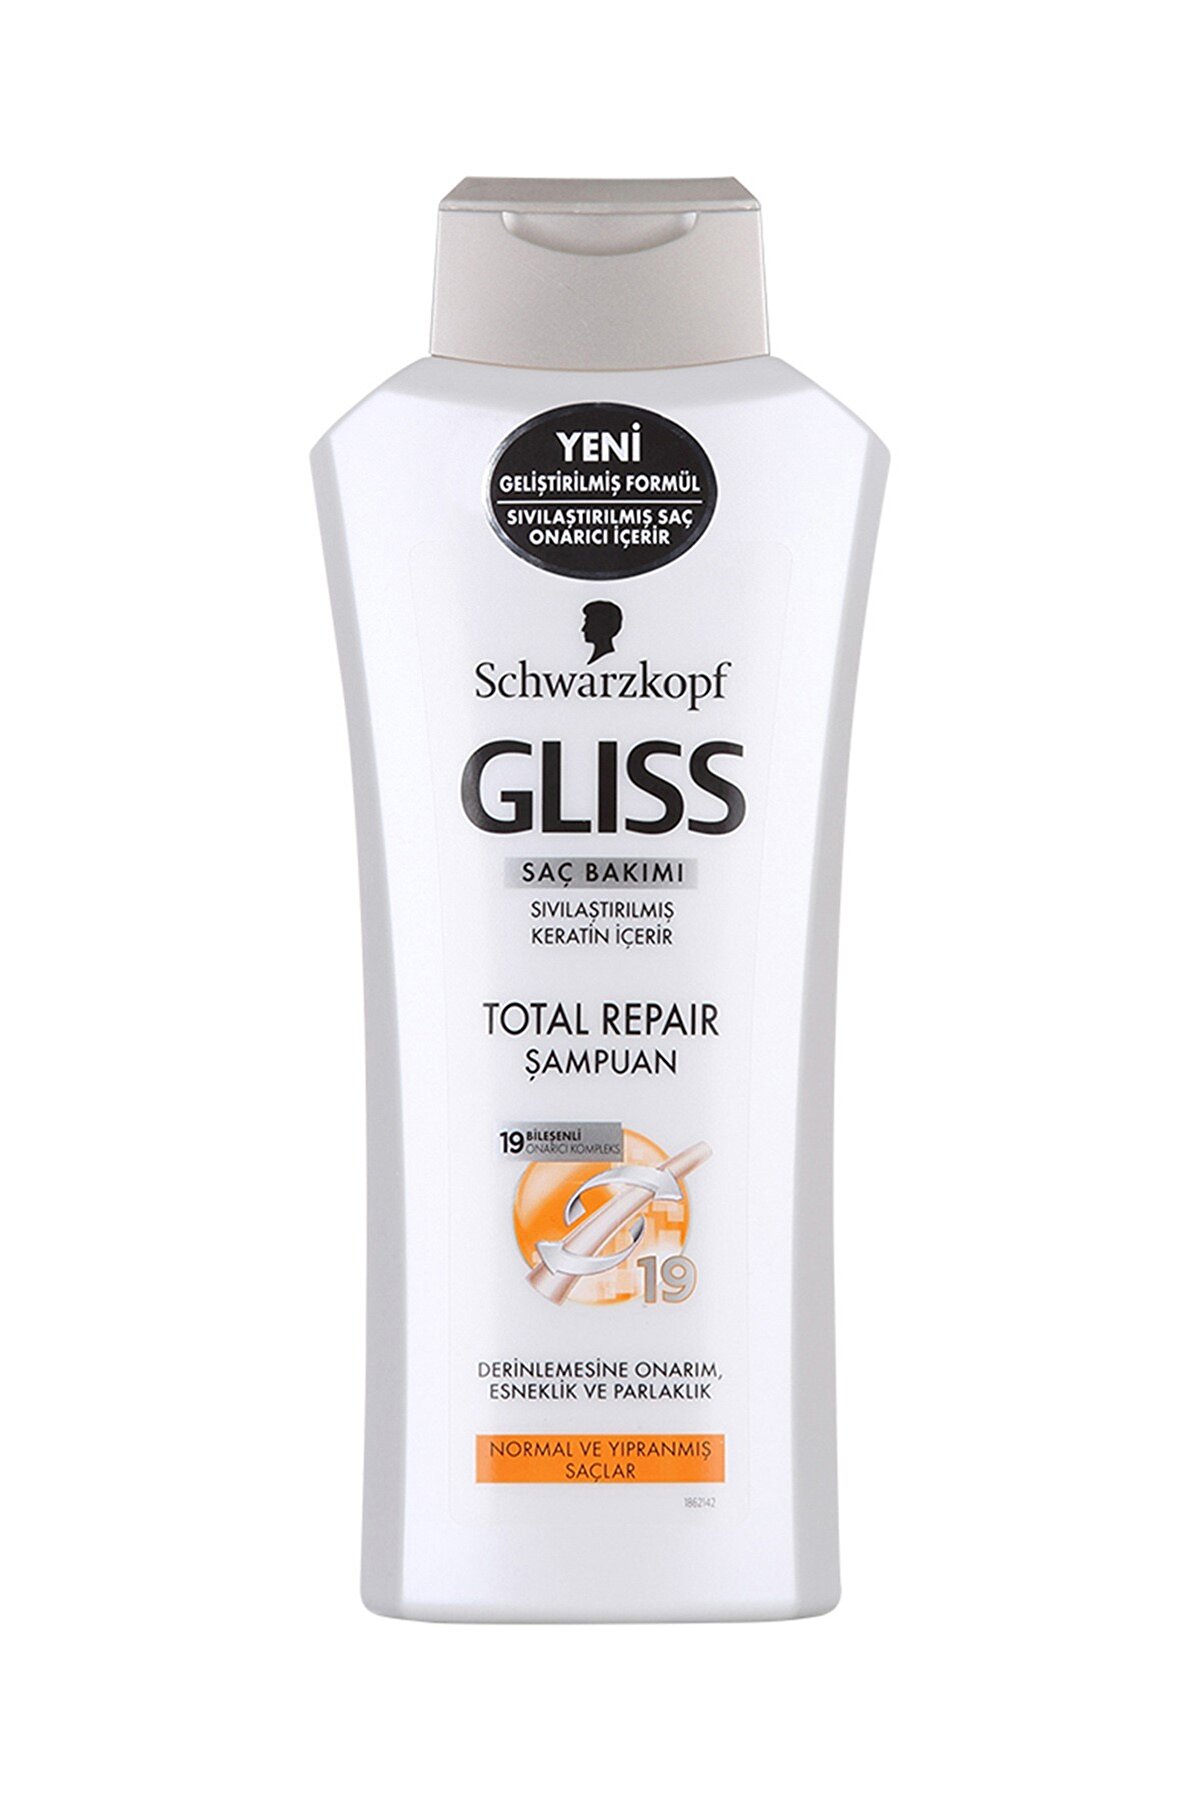 Gliss Normal ve Yıpranmış Saçlar Onarıcı Şampuan 650 ml.